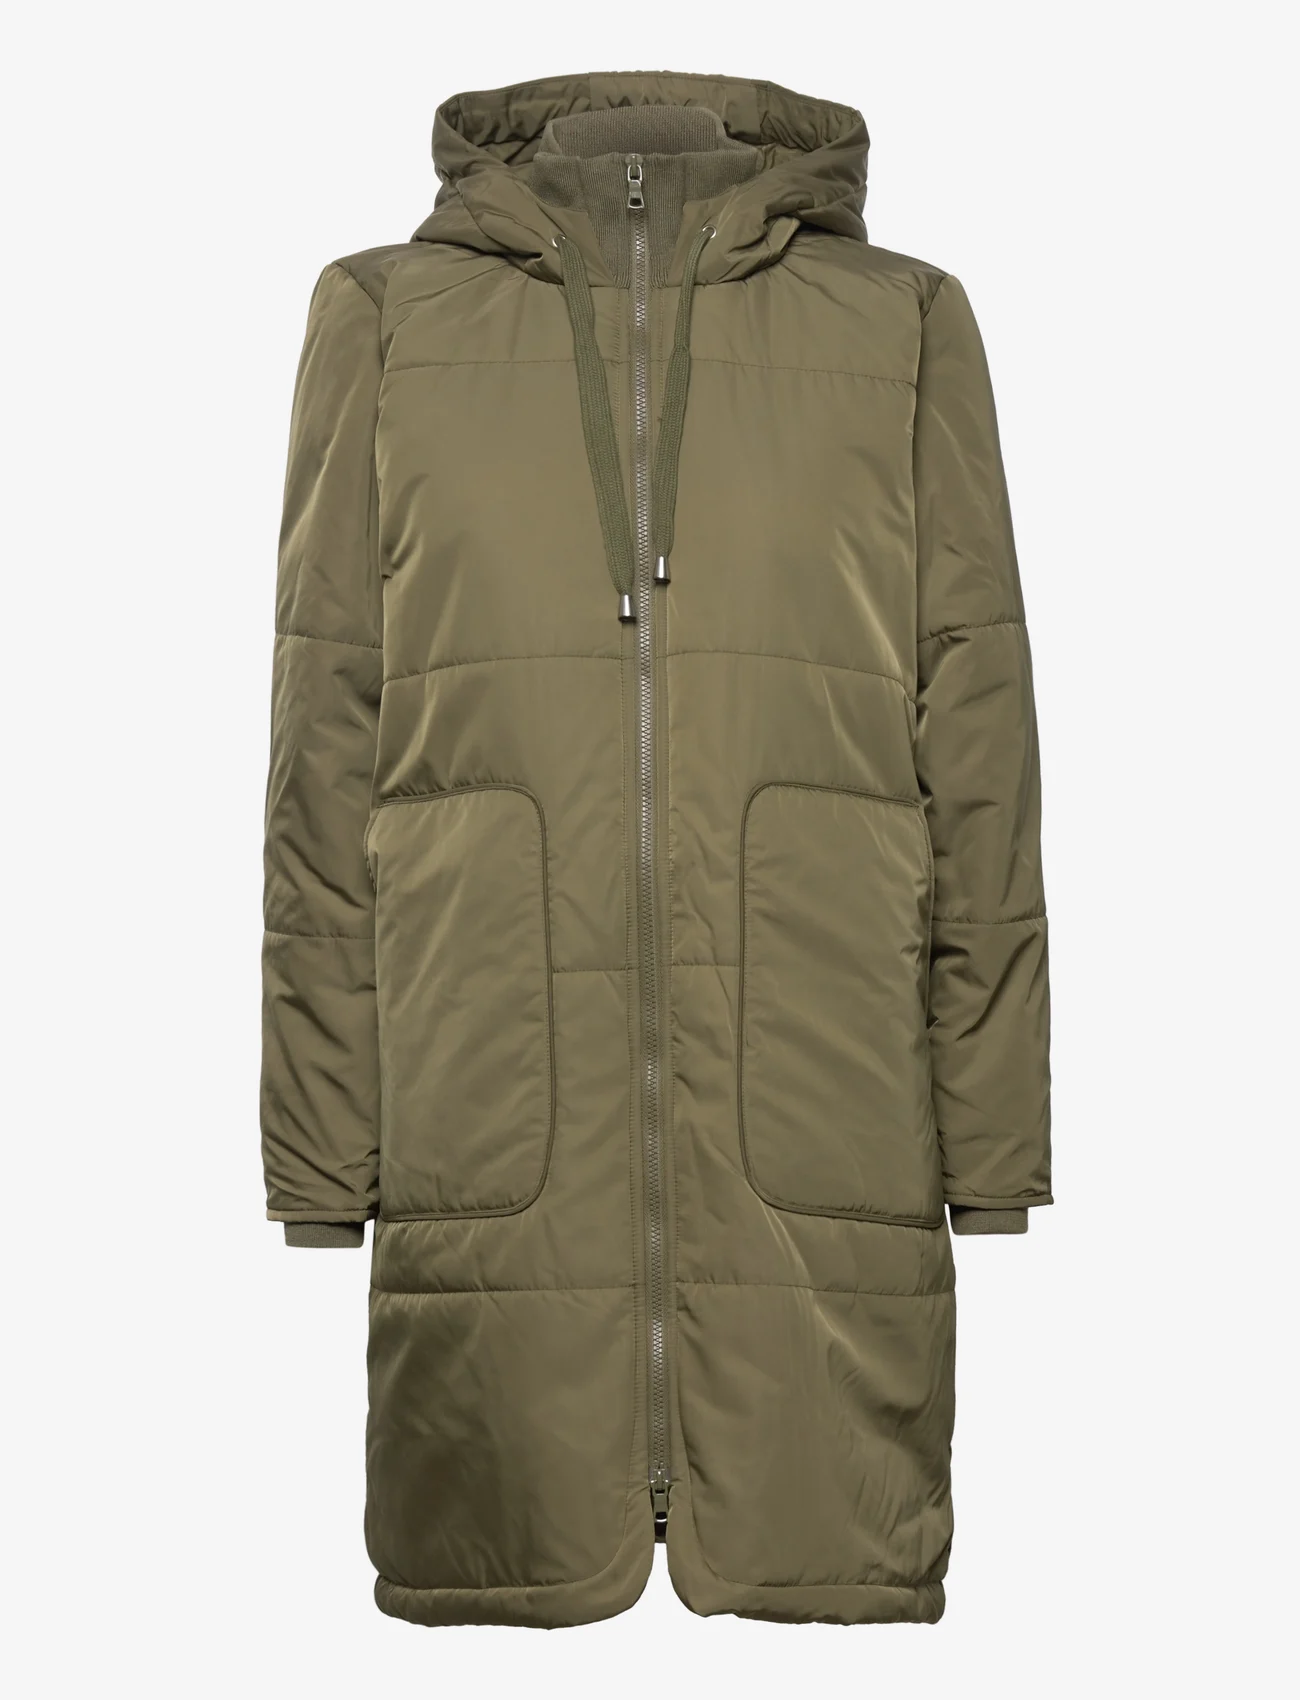 Sofie Schnoor - Jacket - Žieminiai paltai - army green - 0